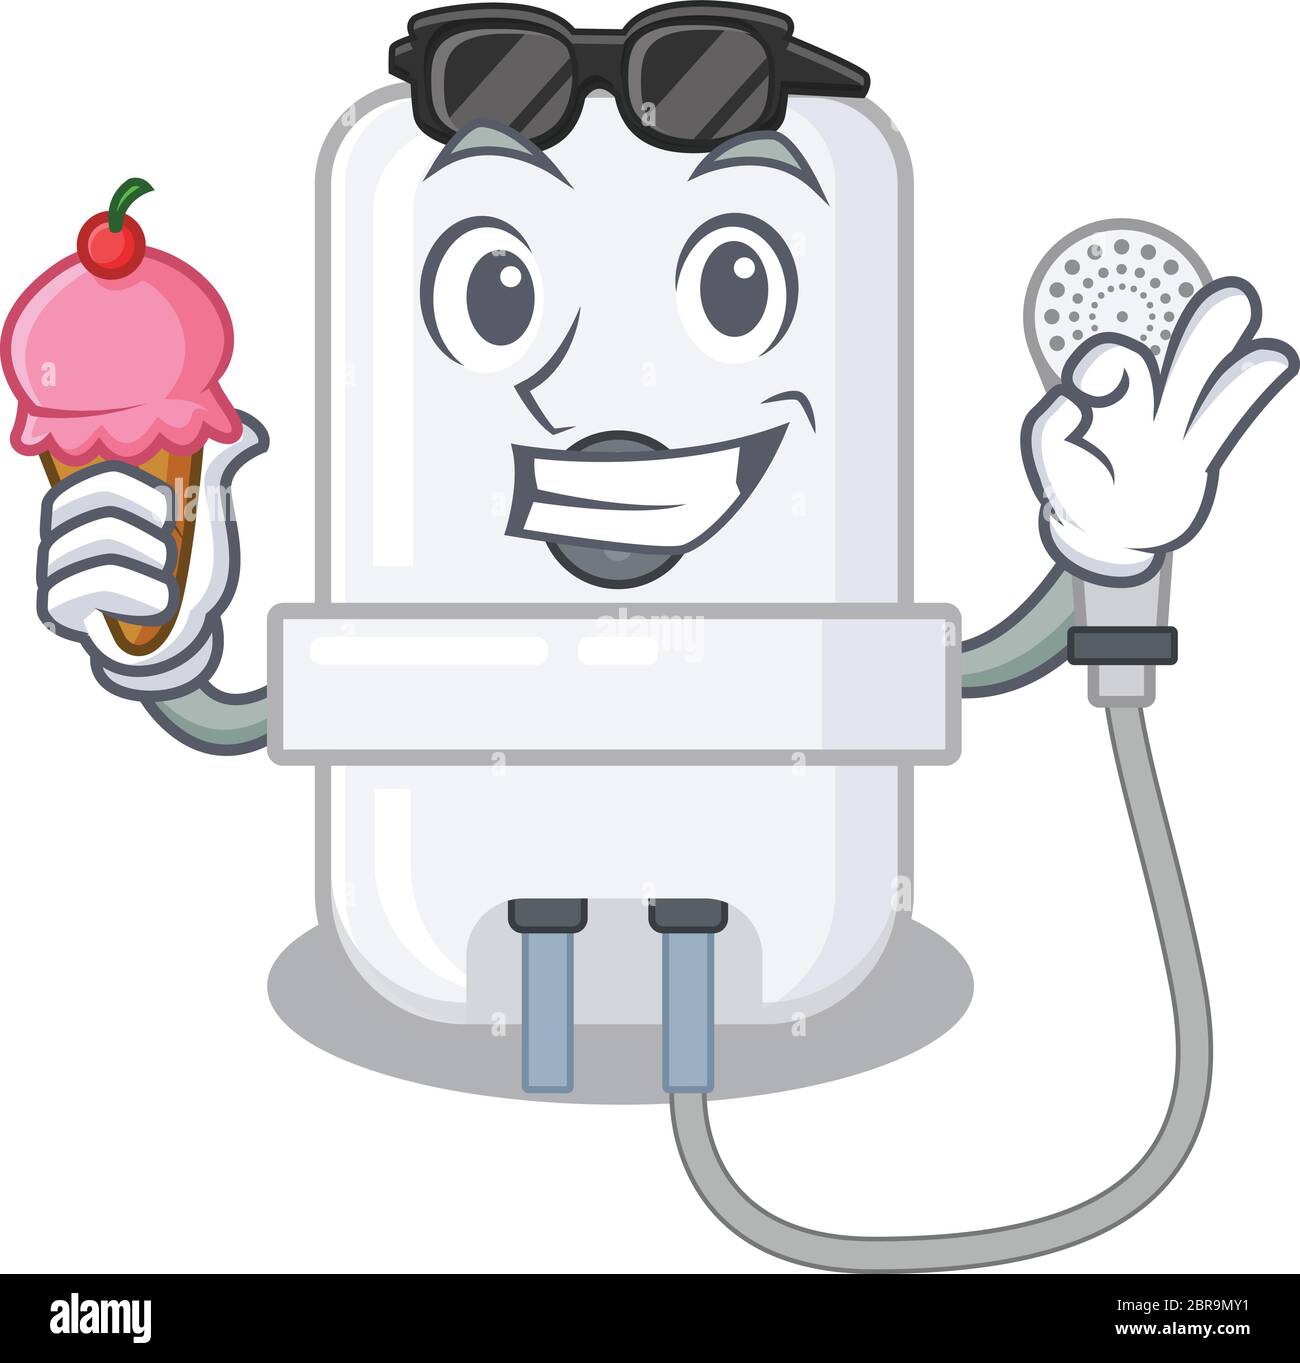 Dessin animé d'un chauffe-eau électrique tenant une glace à cône Image  Vectorielle Stock - Alamy